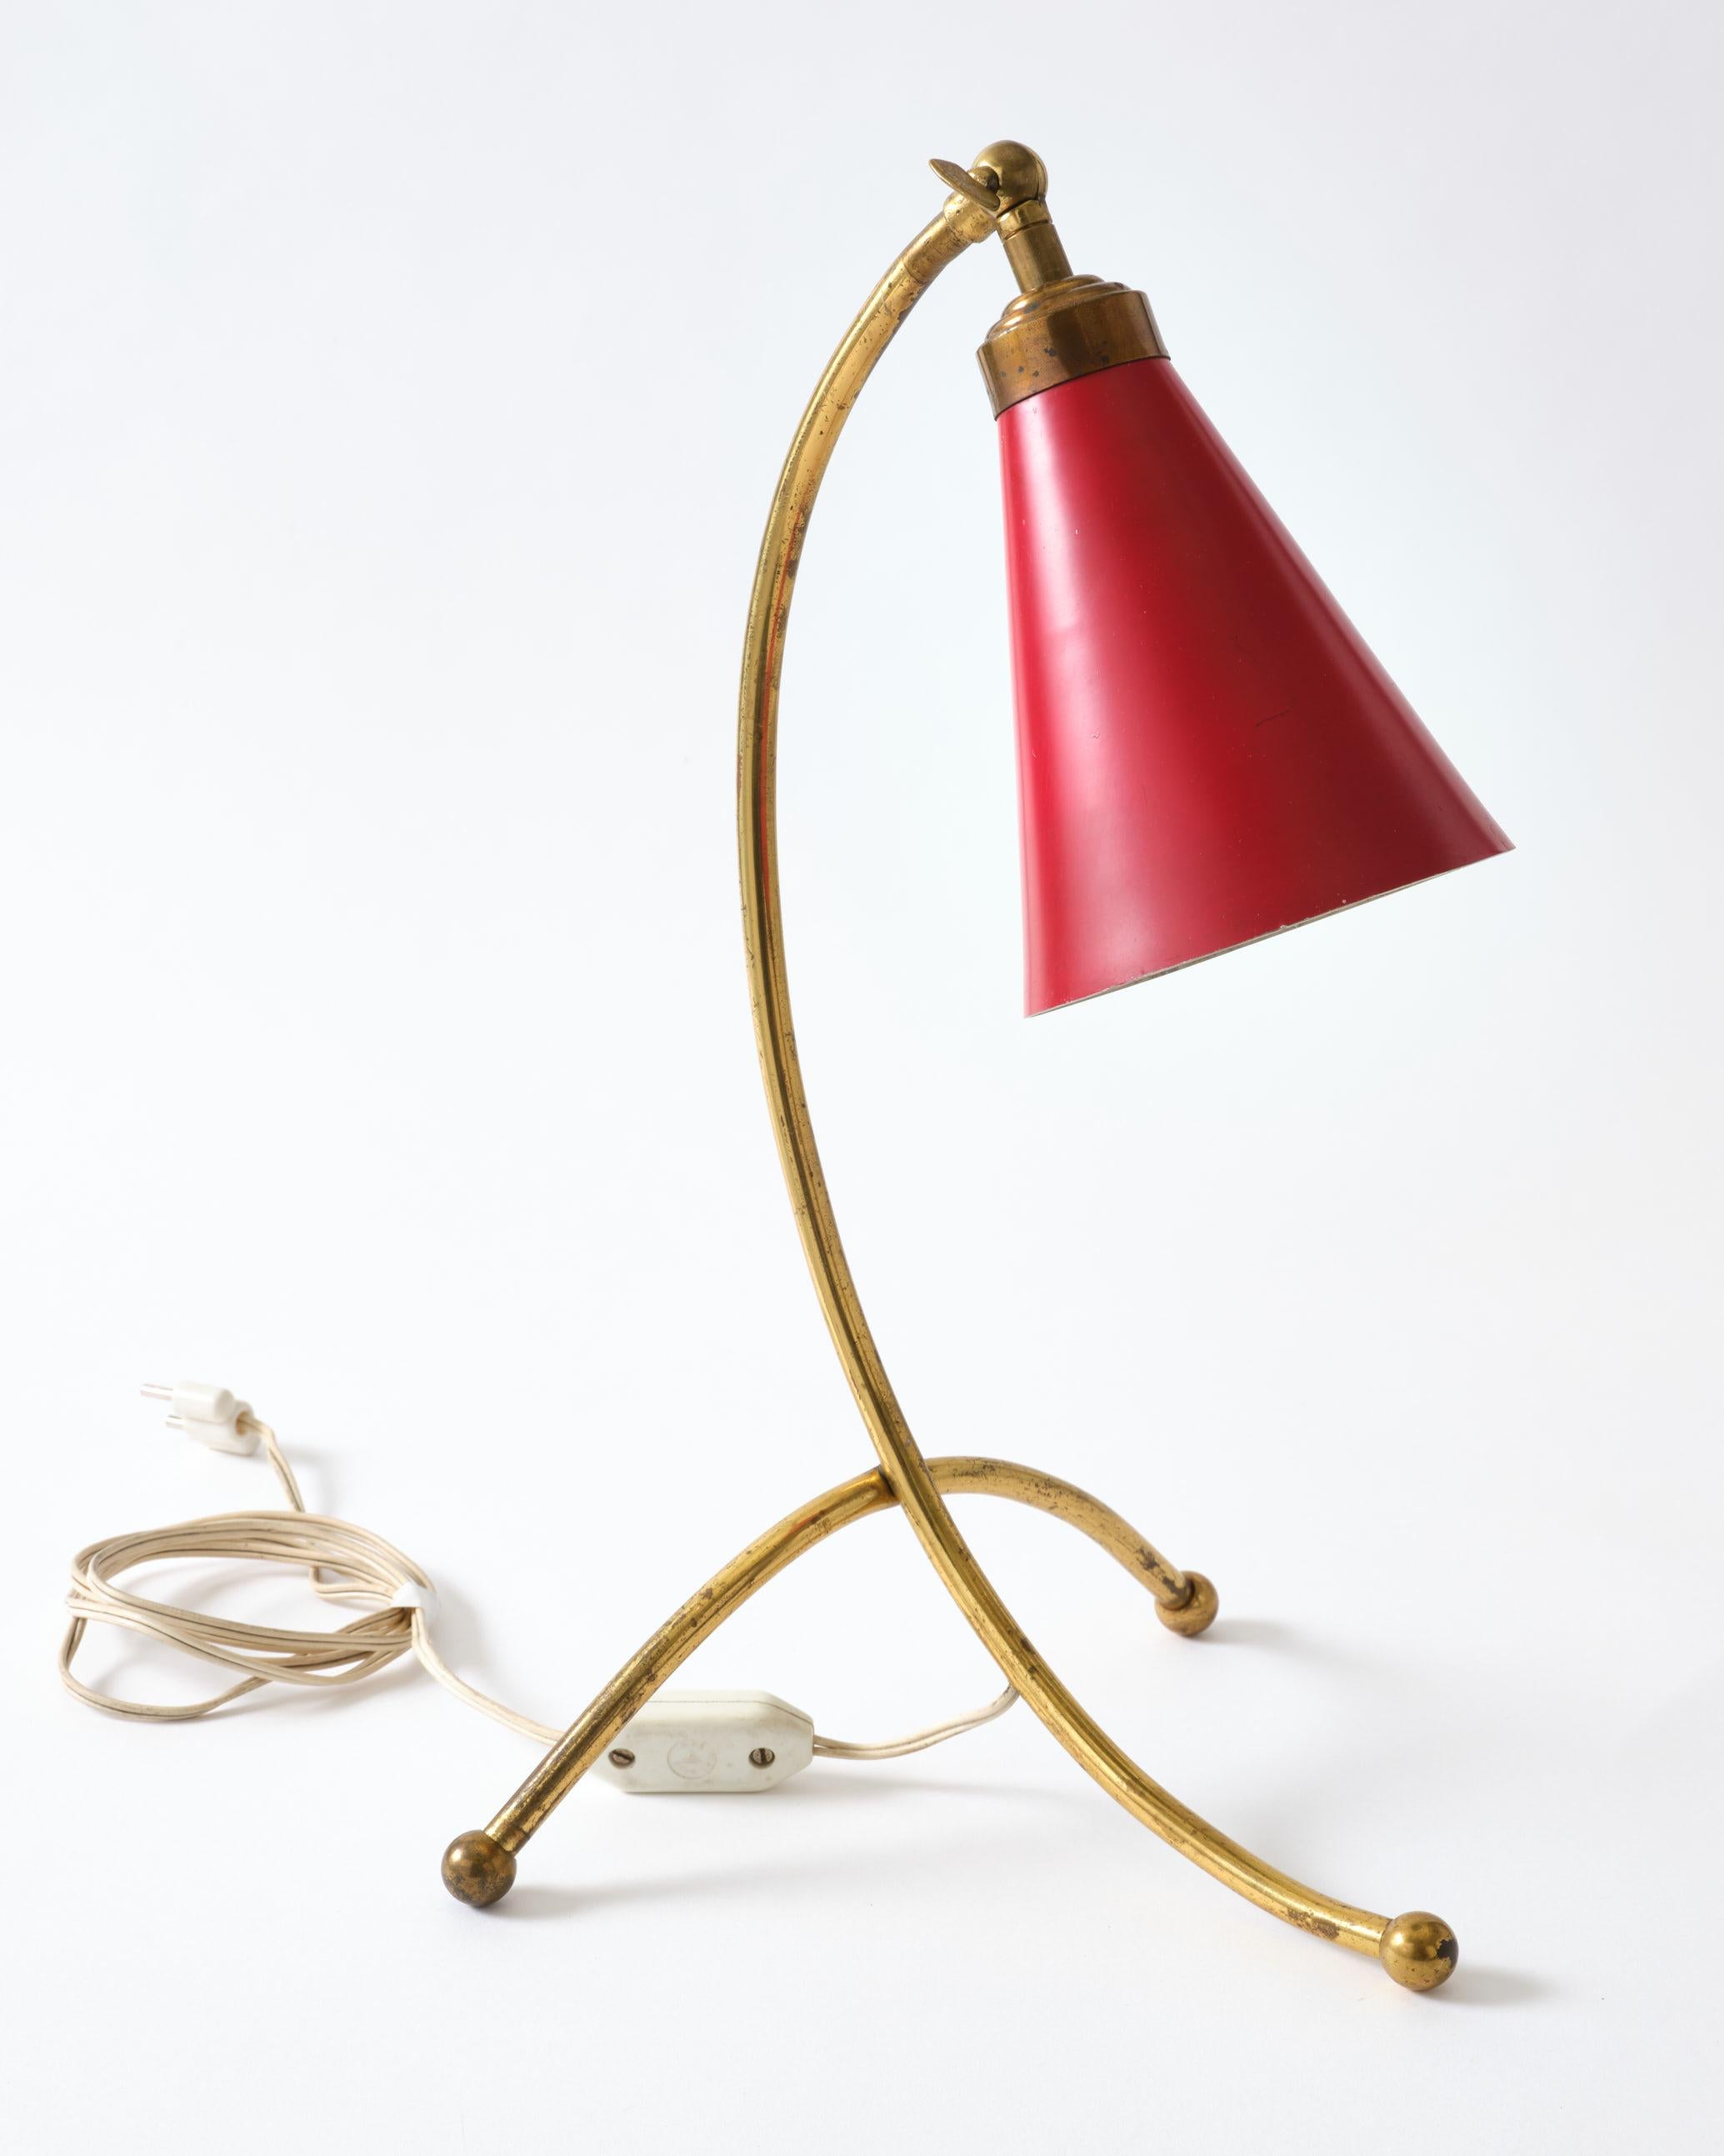 Lampe de table en laiton avec un abat-jour en métal rouge. Cette lampe provient d'Italie, C.C 1950.
La lampe n'a pas été polie. La lampe est dans son état d'origine.
La lampe sera livrée avec un petit transformateur afin de pouvoir être utilisée sur